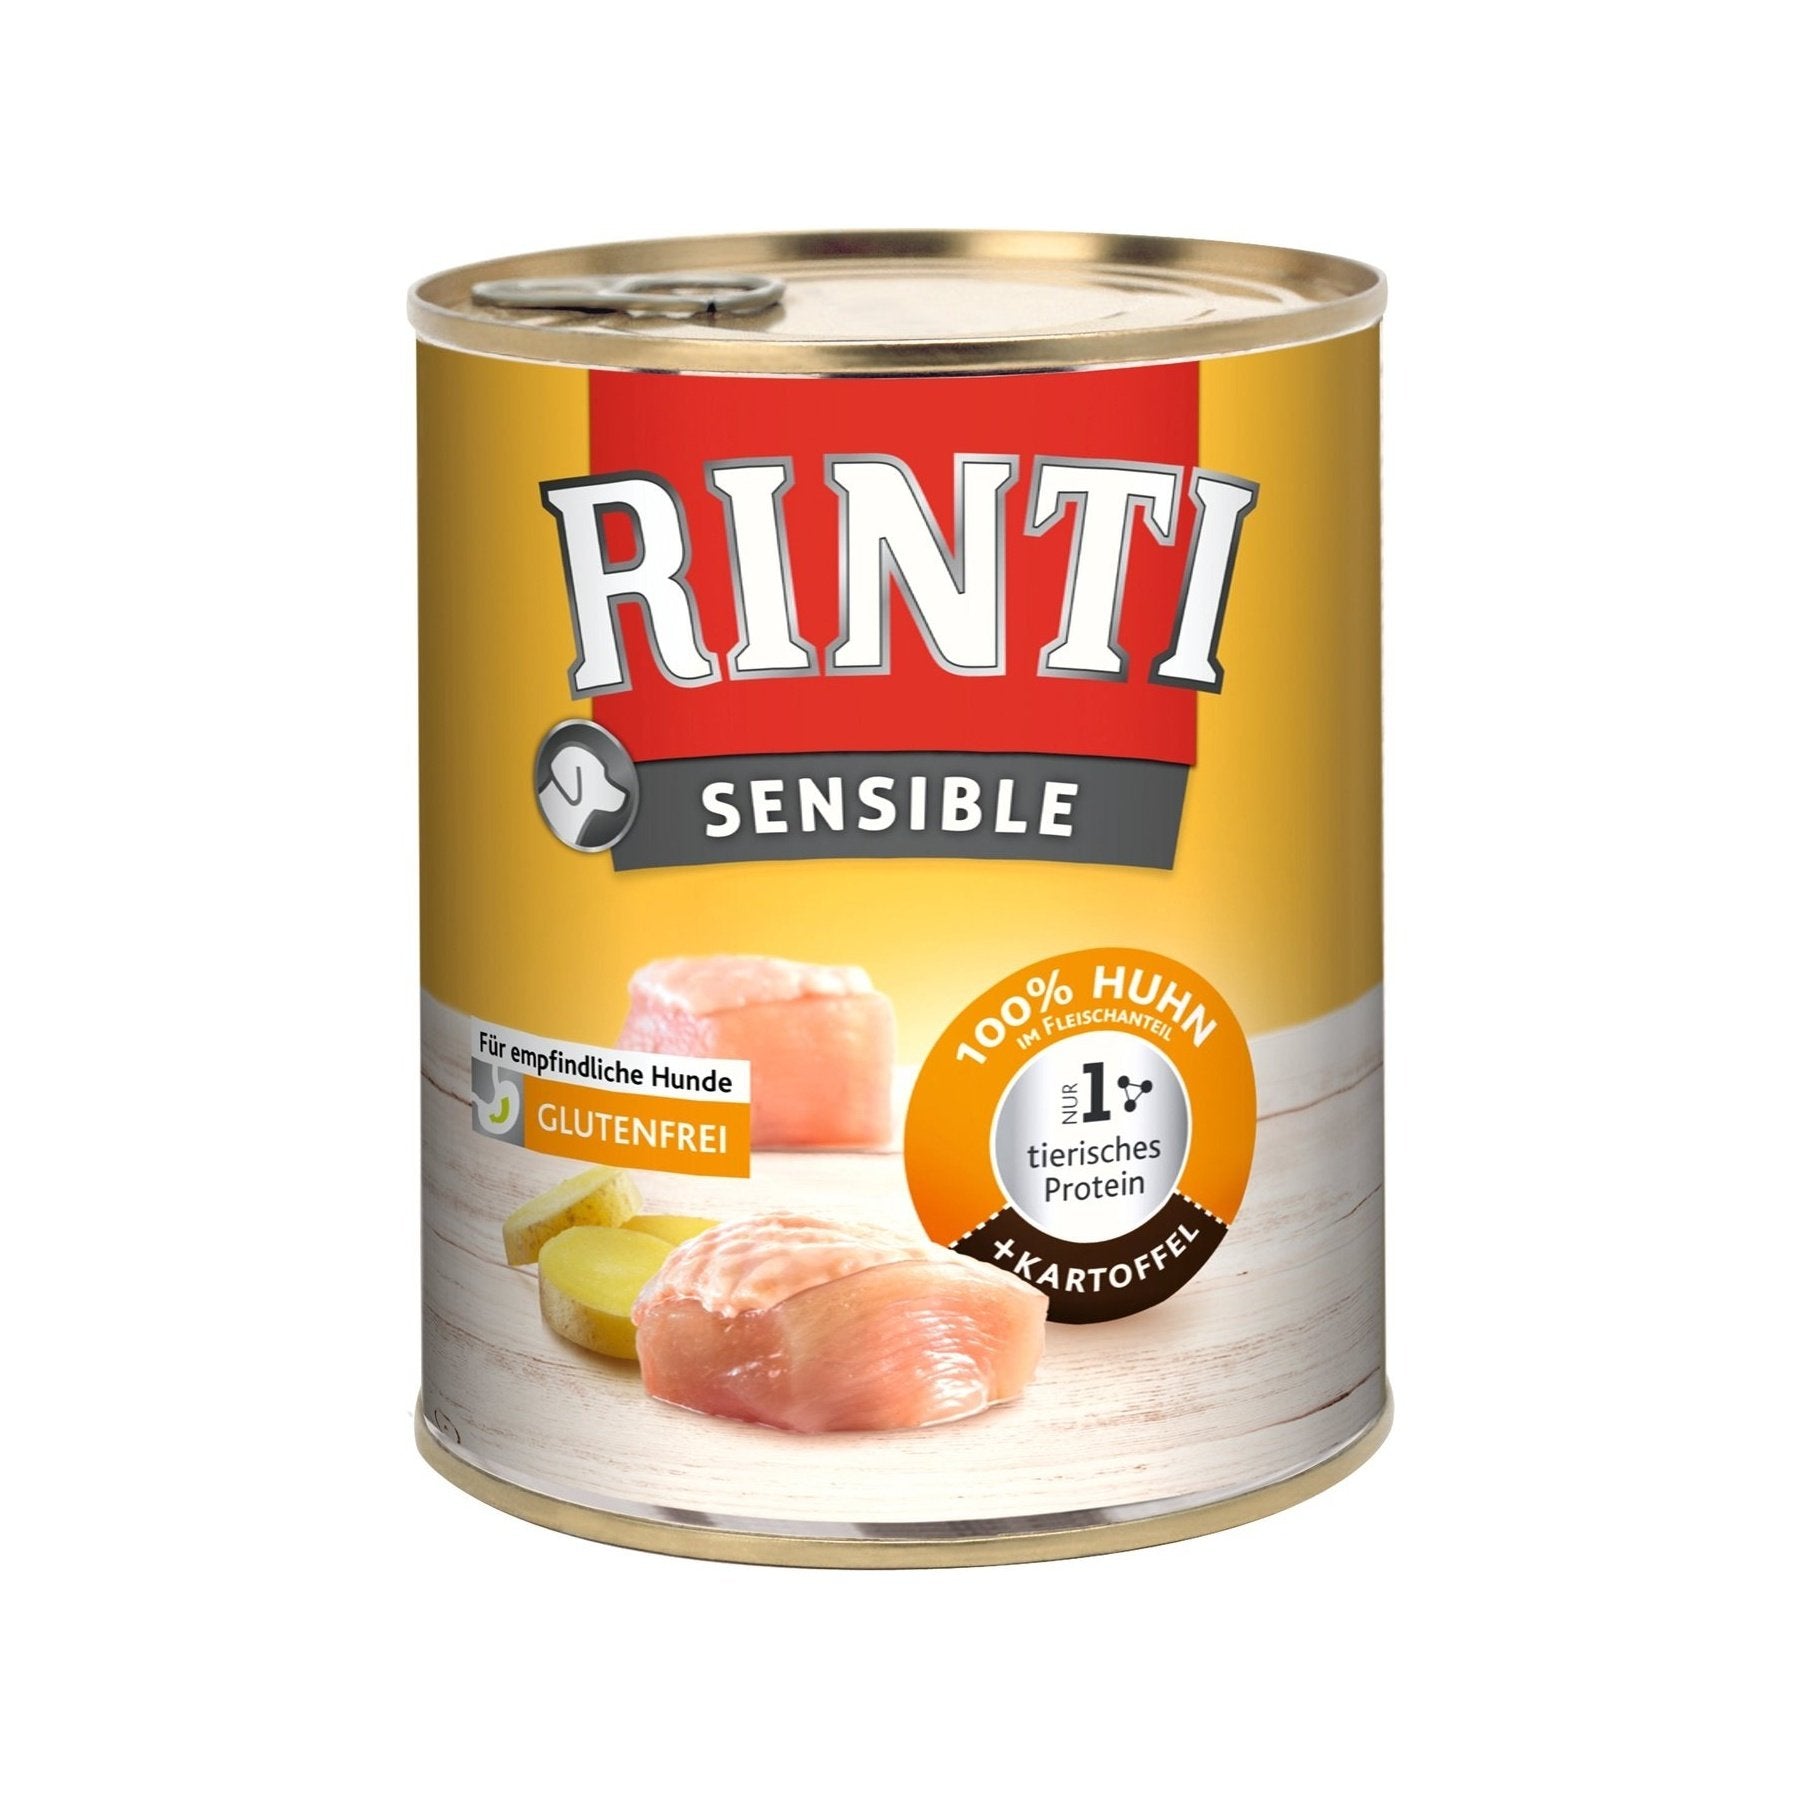 Artikel mit dem Namen Rinti Sensible Huhn mit Kartoffel im Shop von zoo.de , dem Onlineshop für nachhaltiges Hundefutter und Katzenfutter.